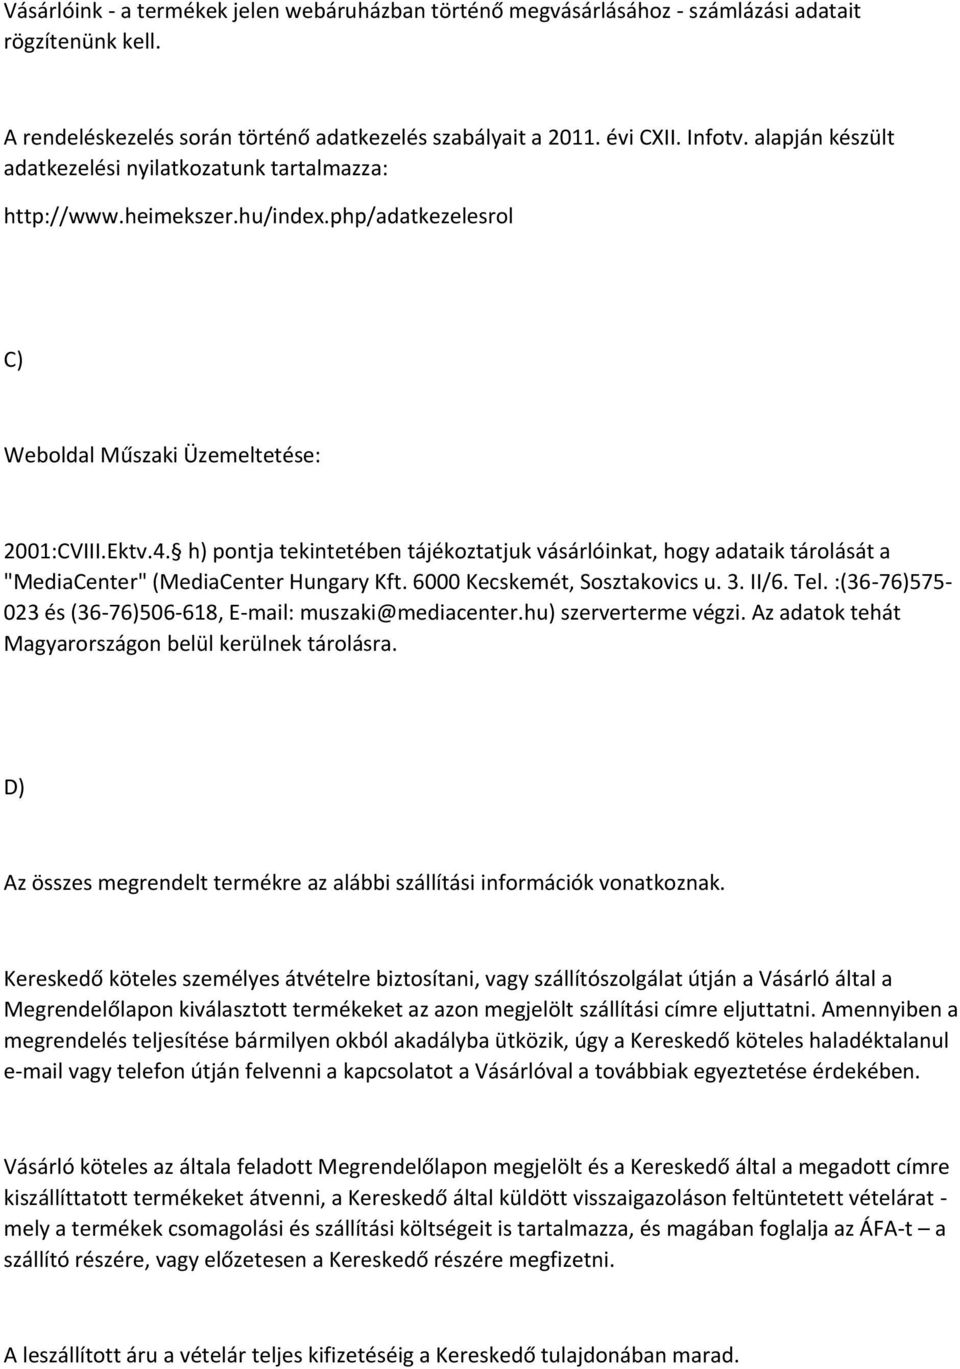 h) pontja tekintetében tájékoztatjuk vásárlóinkat, hogy adataik tárolását a "MediaCenter" (MediaCenter Hungary Kft. 6000 Kecskemét, Sosztakovics u. 3. II/6. Tel.